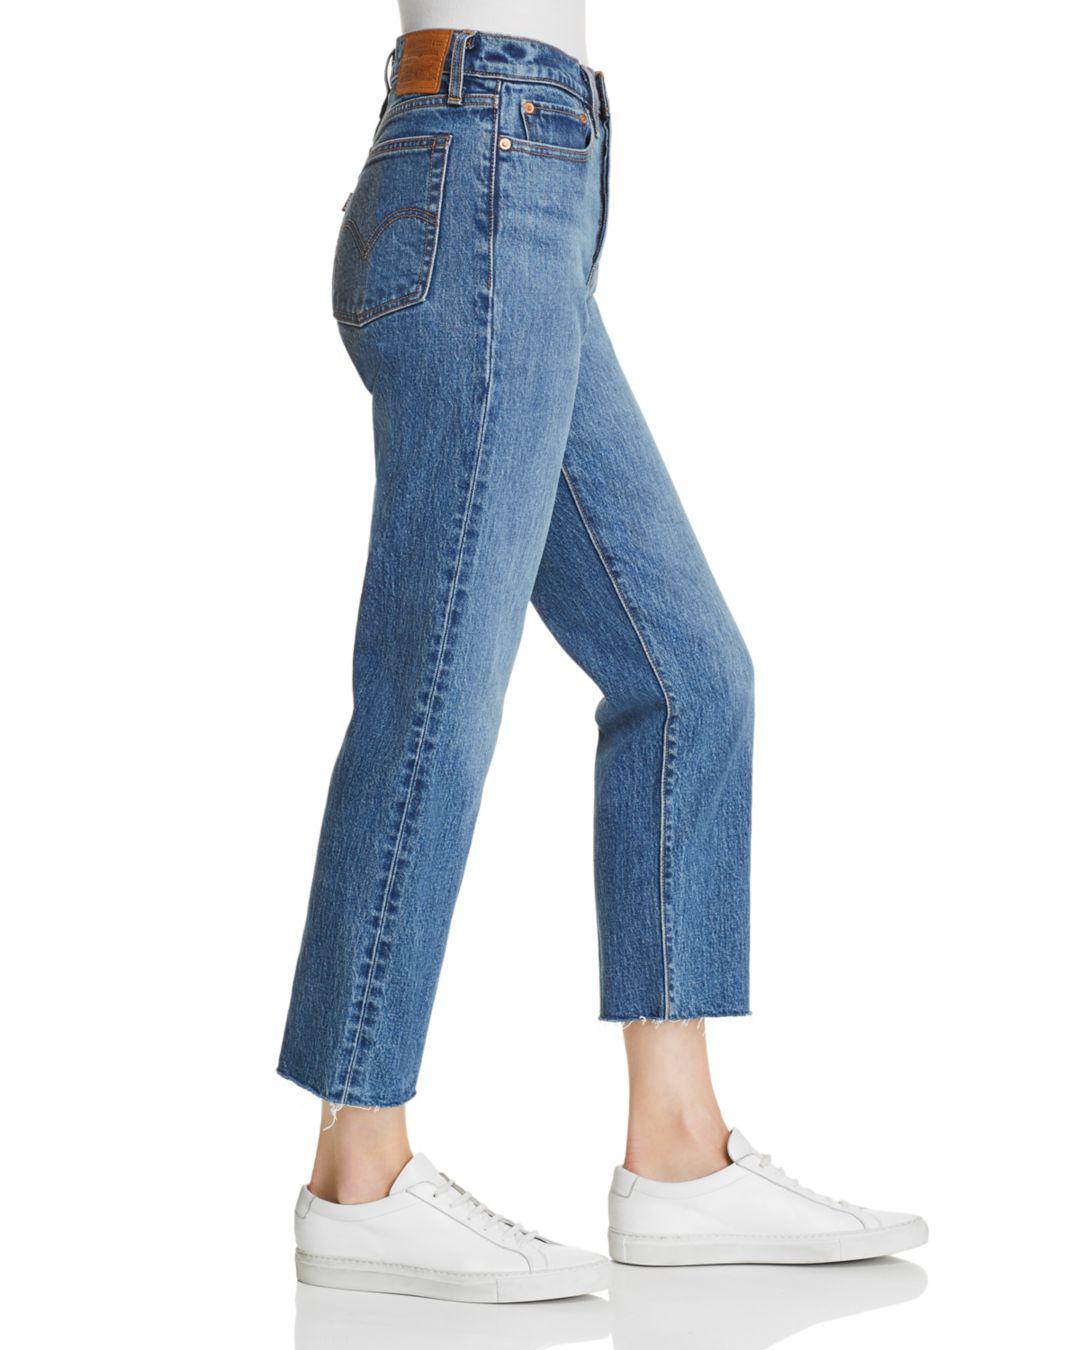 Levi's Denim Wedgie Crop Straight Jeans 